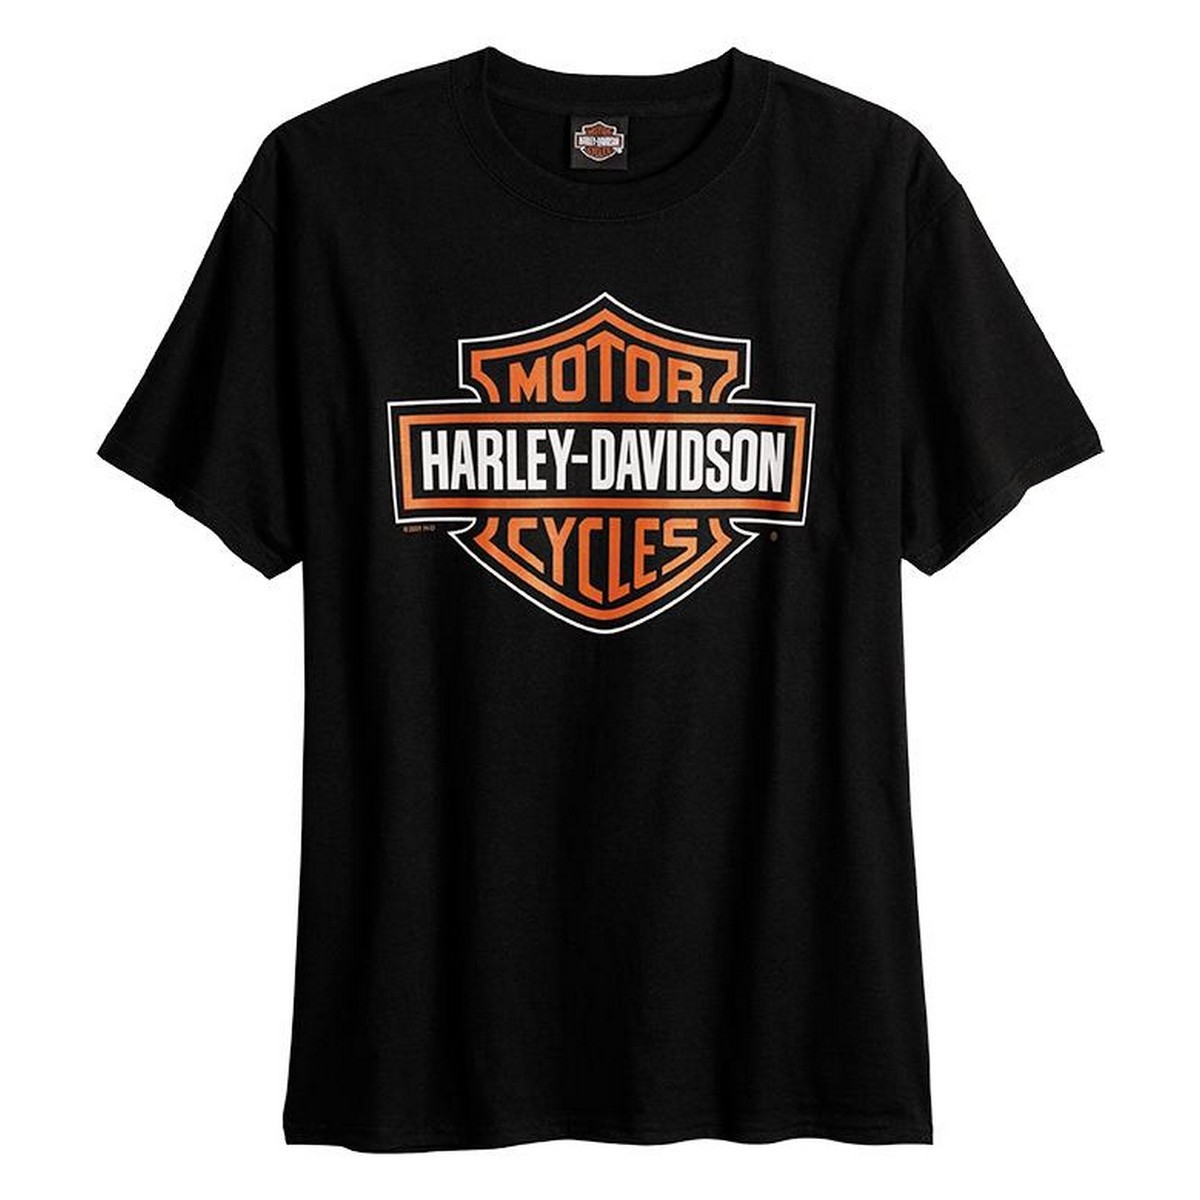 Harley Davidson Black Cotton T-shirt For Men 230202021